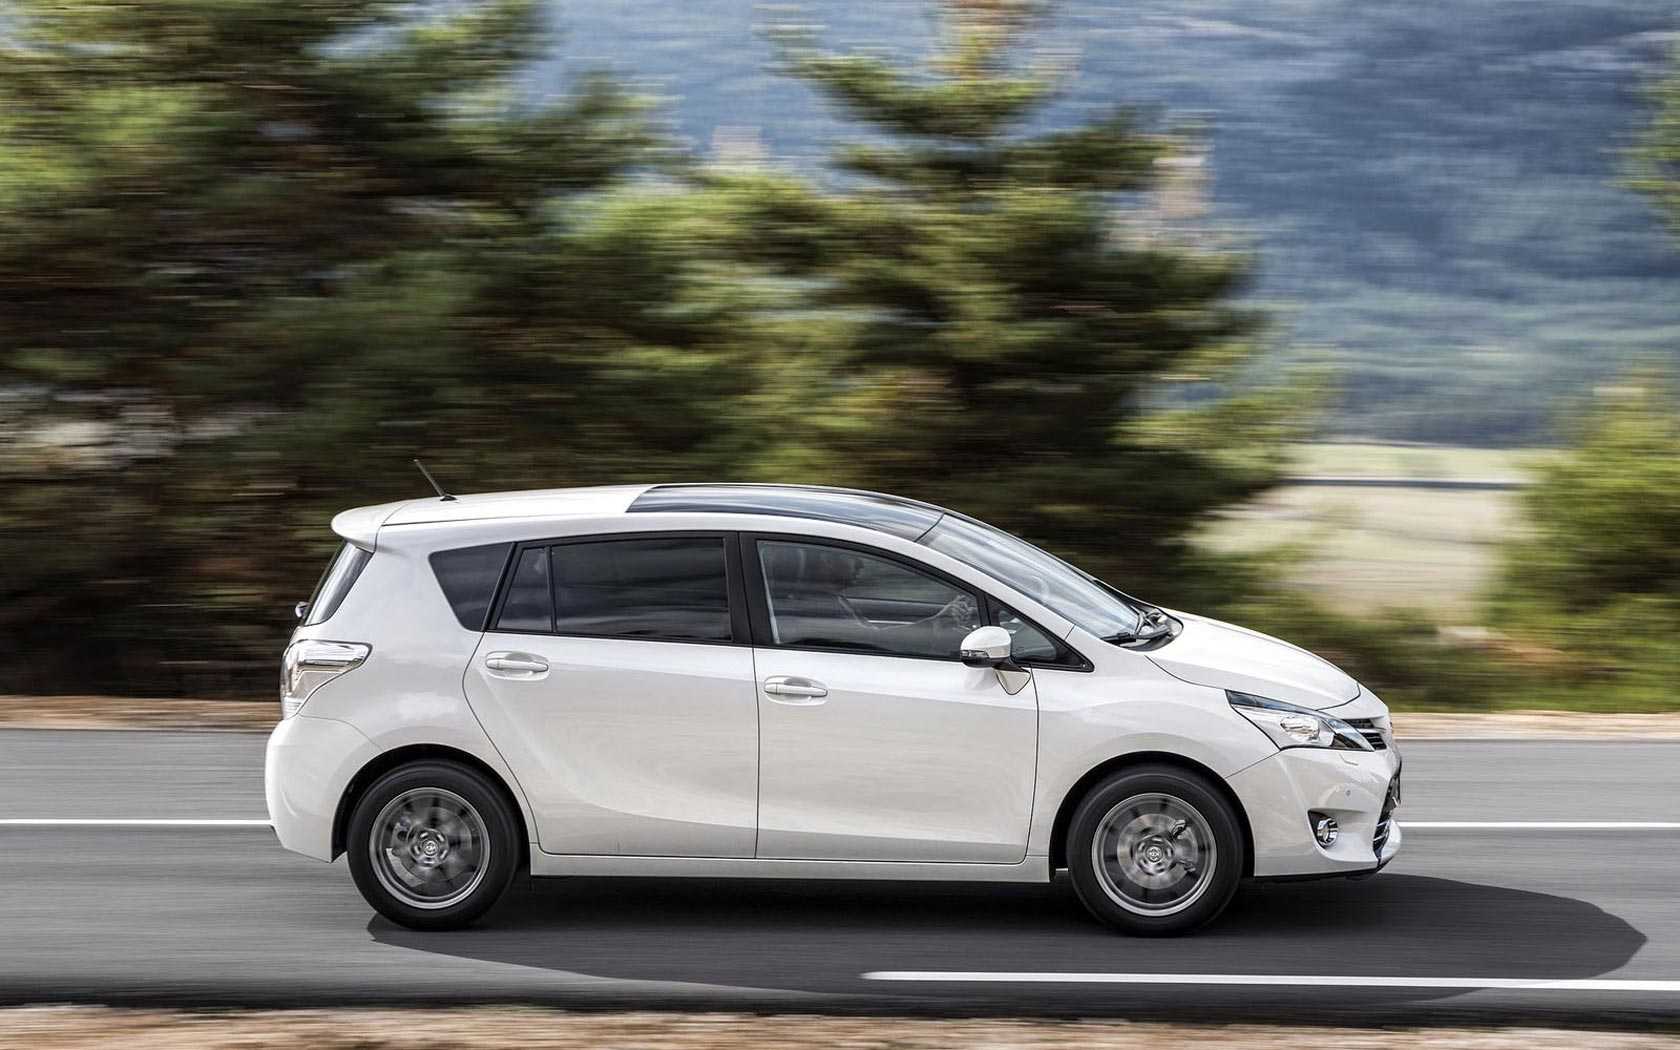 Toyota proace verso 2017: минивэн для бизнеса и путешествий